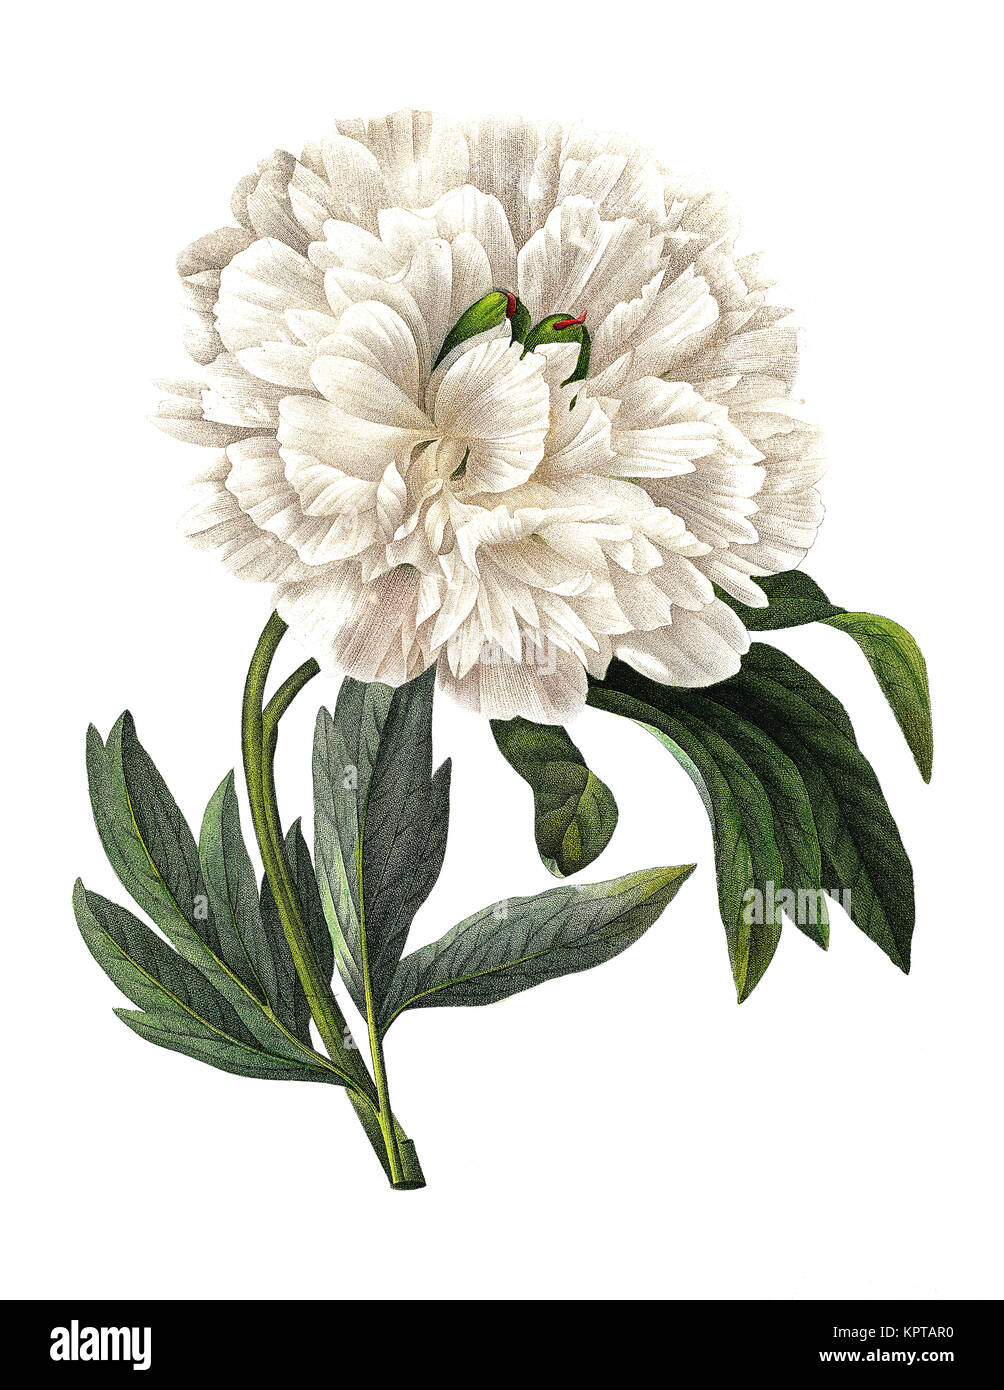 Illustration au 19th siècle d'une fleur blanche de Paeonia officinalis (pivoine européenne ou pivoine commune). Gravure de Pierre-Joseph Redoute. Banque D'Images